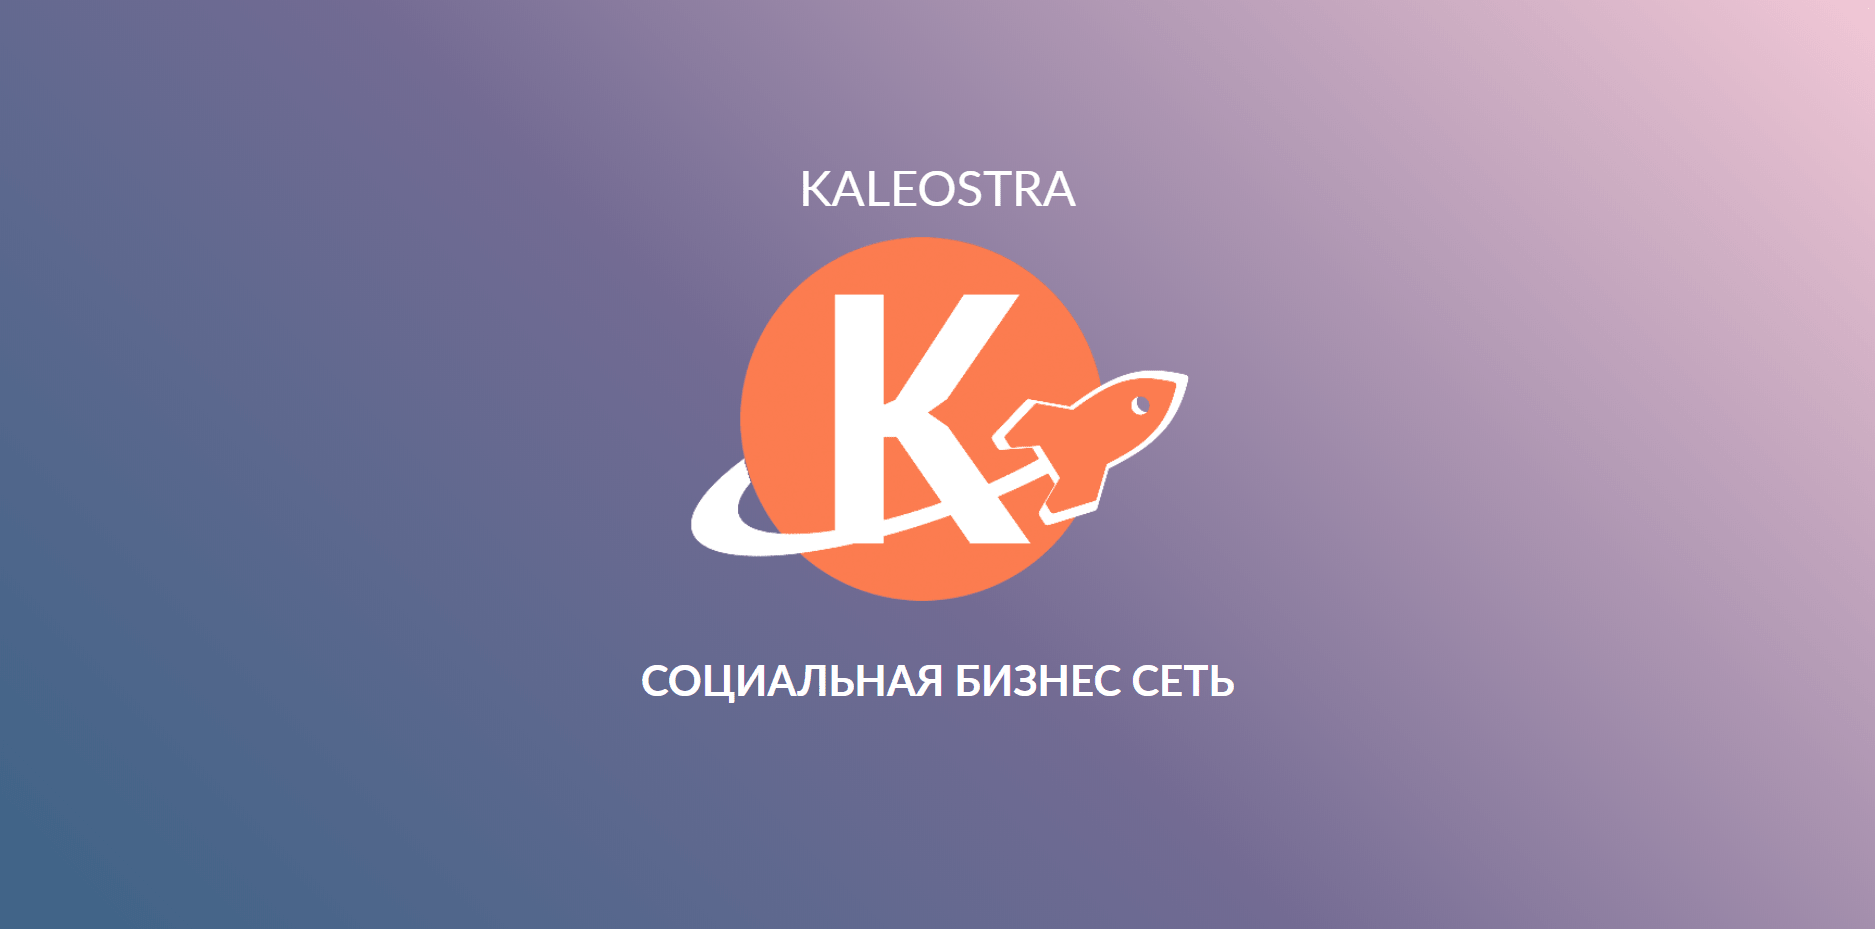 Kaleostra социальная бизнес сеть - Иван Тернов